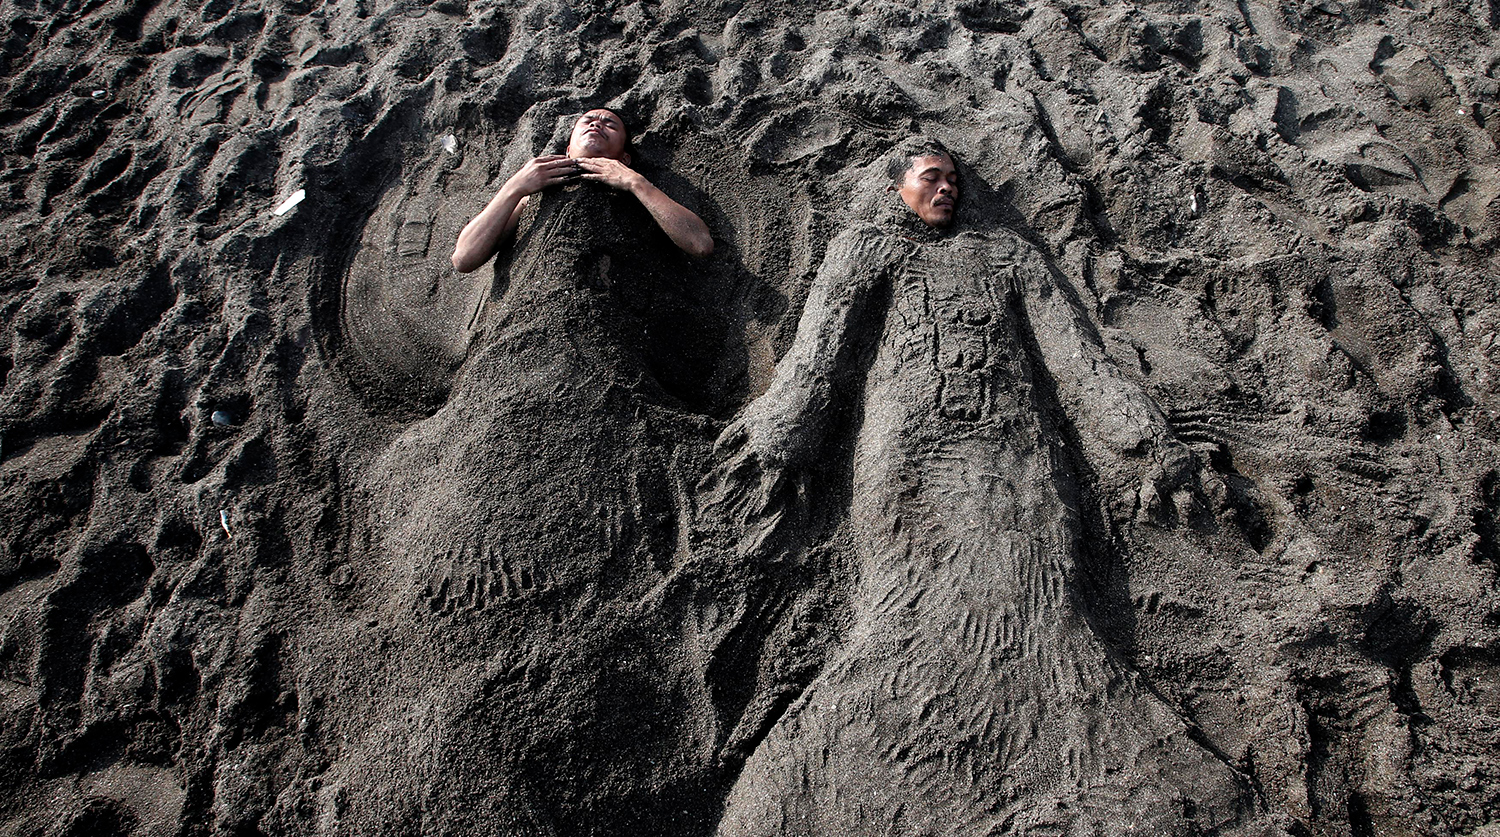 У подростка под кожей завелись паразиты после закапывания на пляже -  Газета.Ru